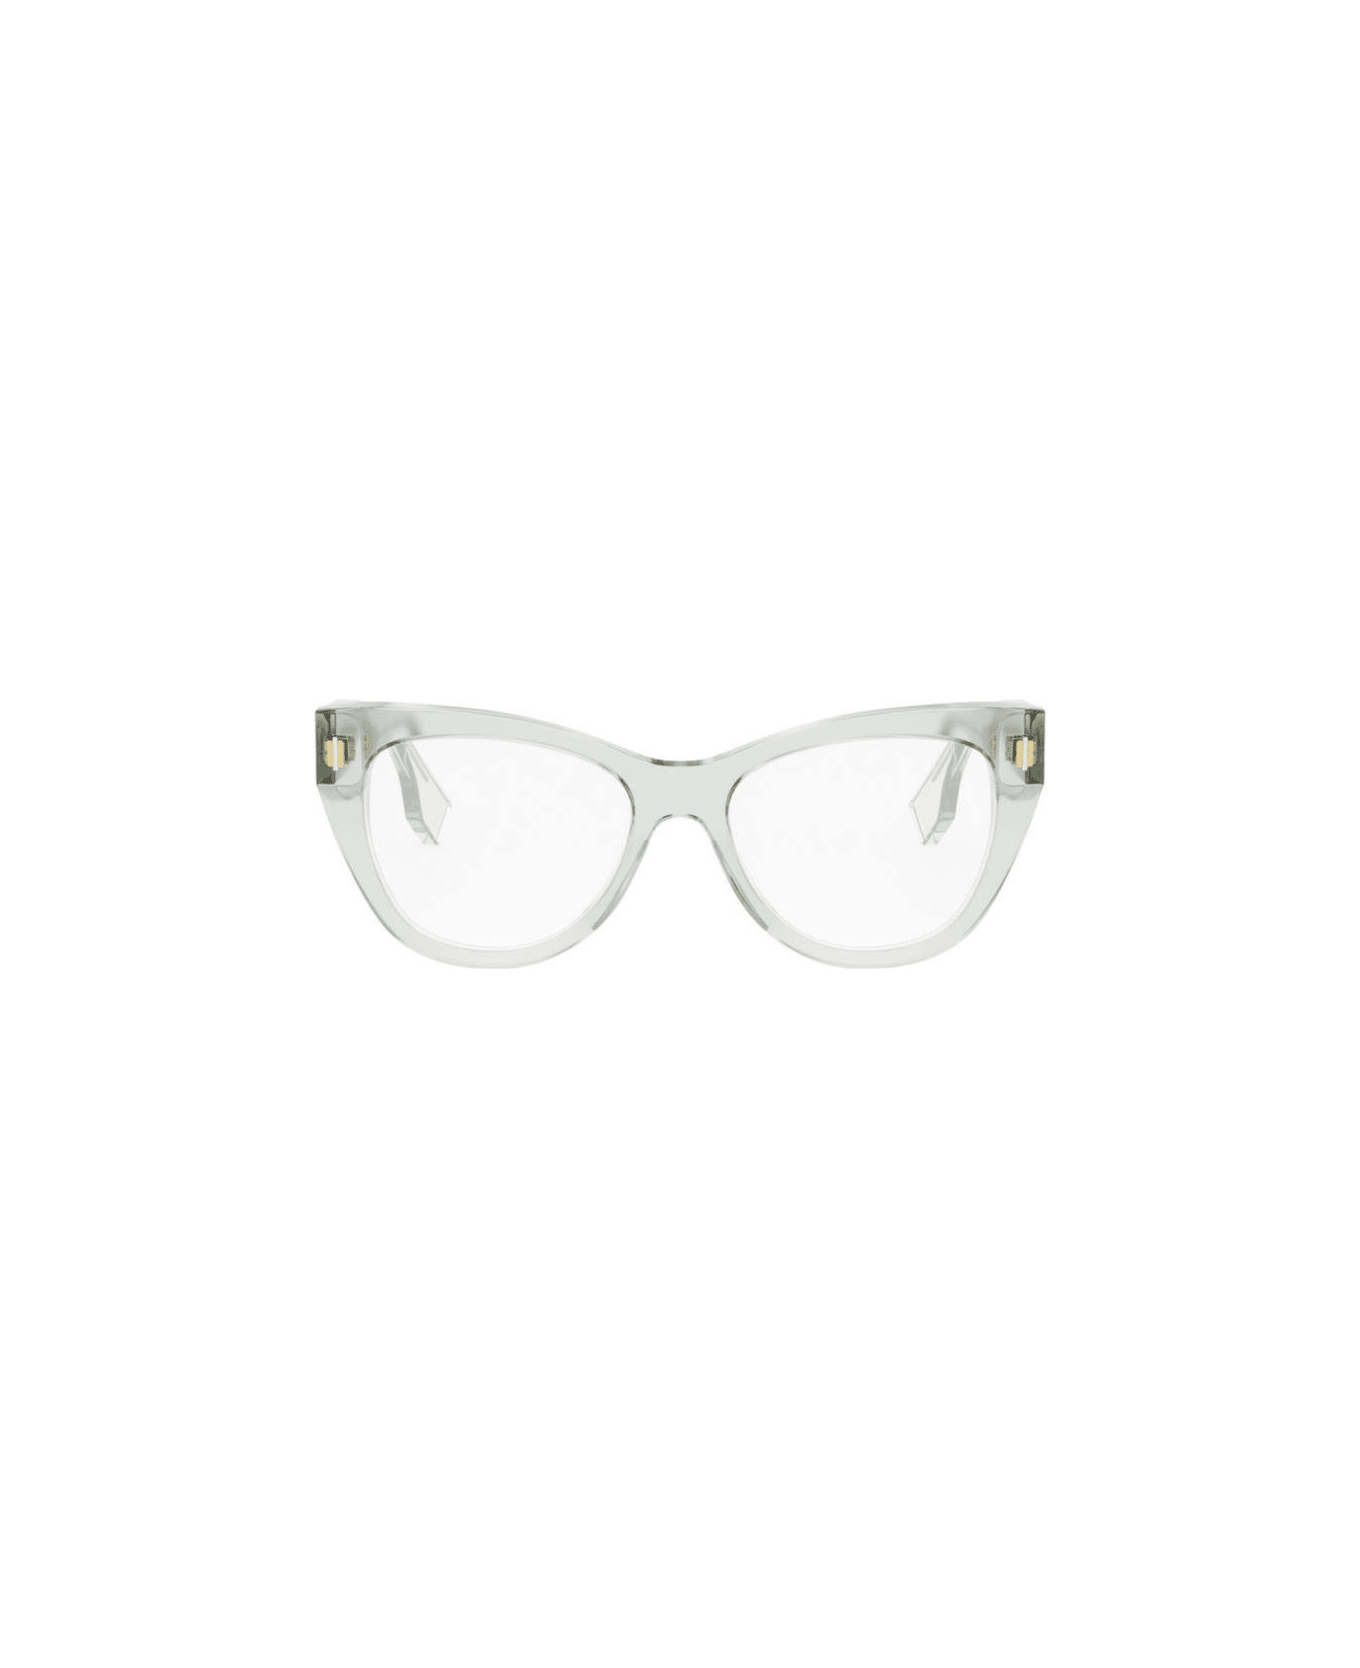 Fendi Eyewear Cat-eye Frame Glasses - 095 アイウェア